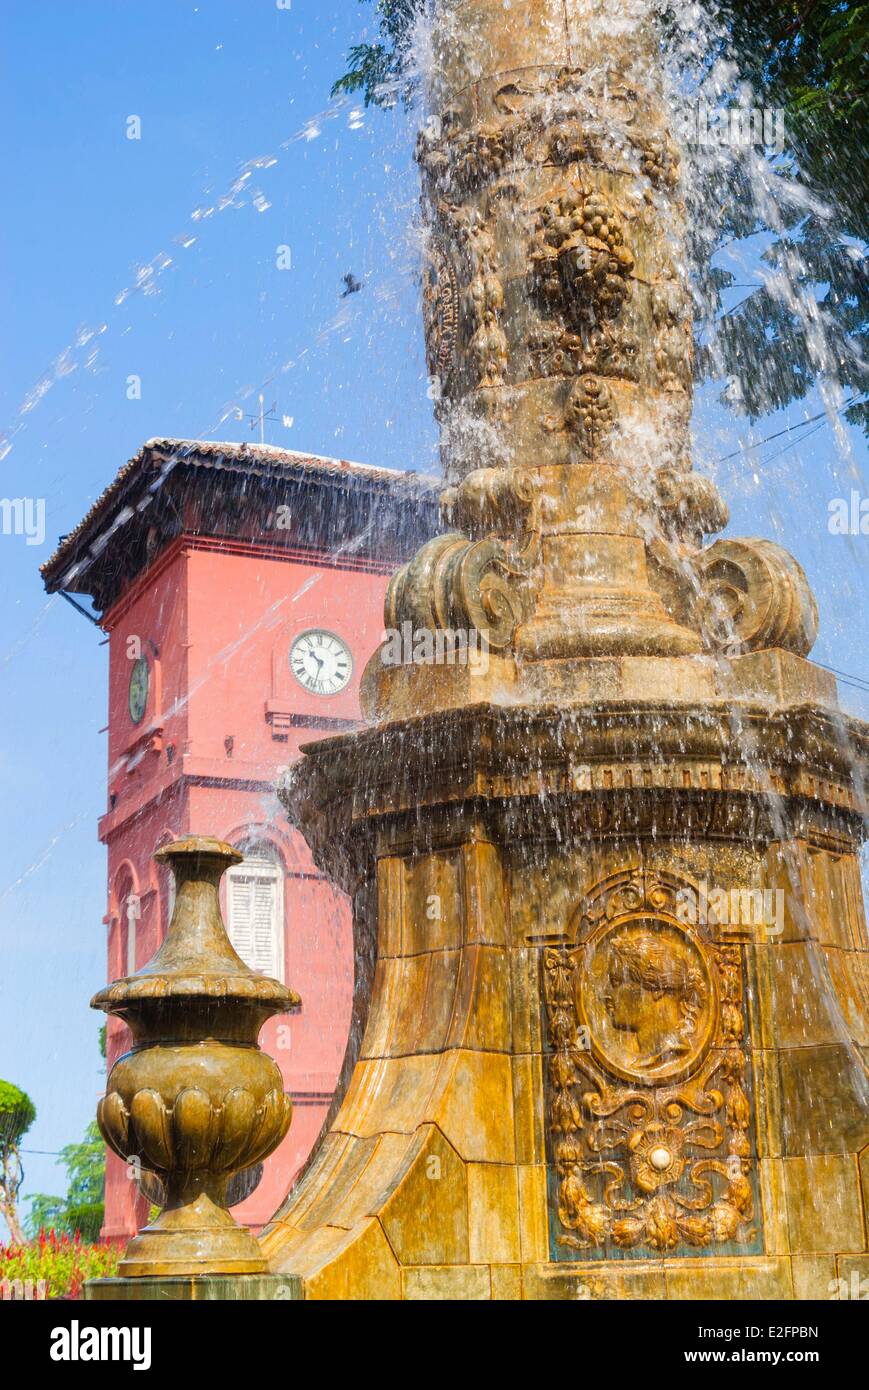 L'État de Melaka Malaysia Melaka (Malacca) ville historique inscrite au Patrimoine Mondial de l'UNESCO Fontaine en ville Tan Beng Swee Banque D'Images